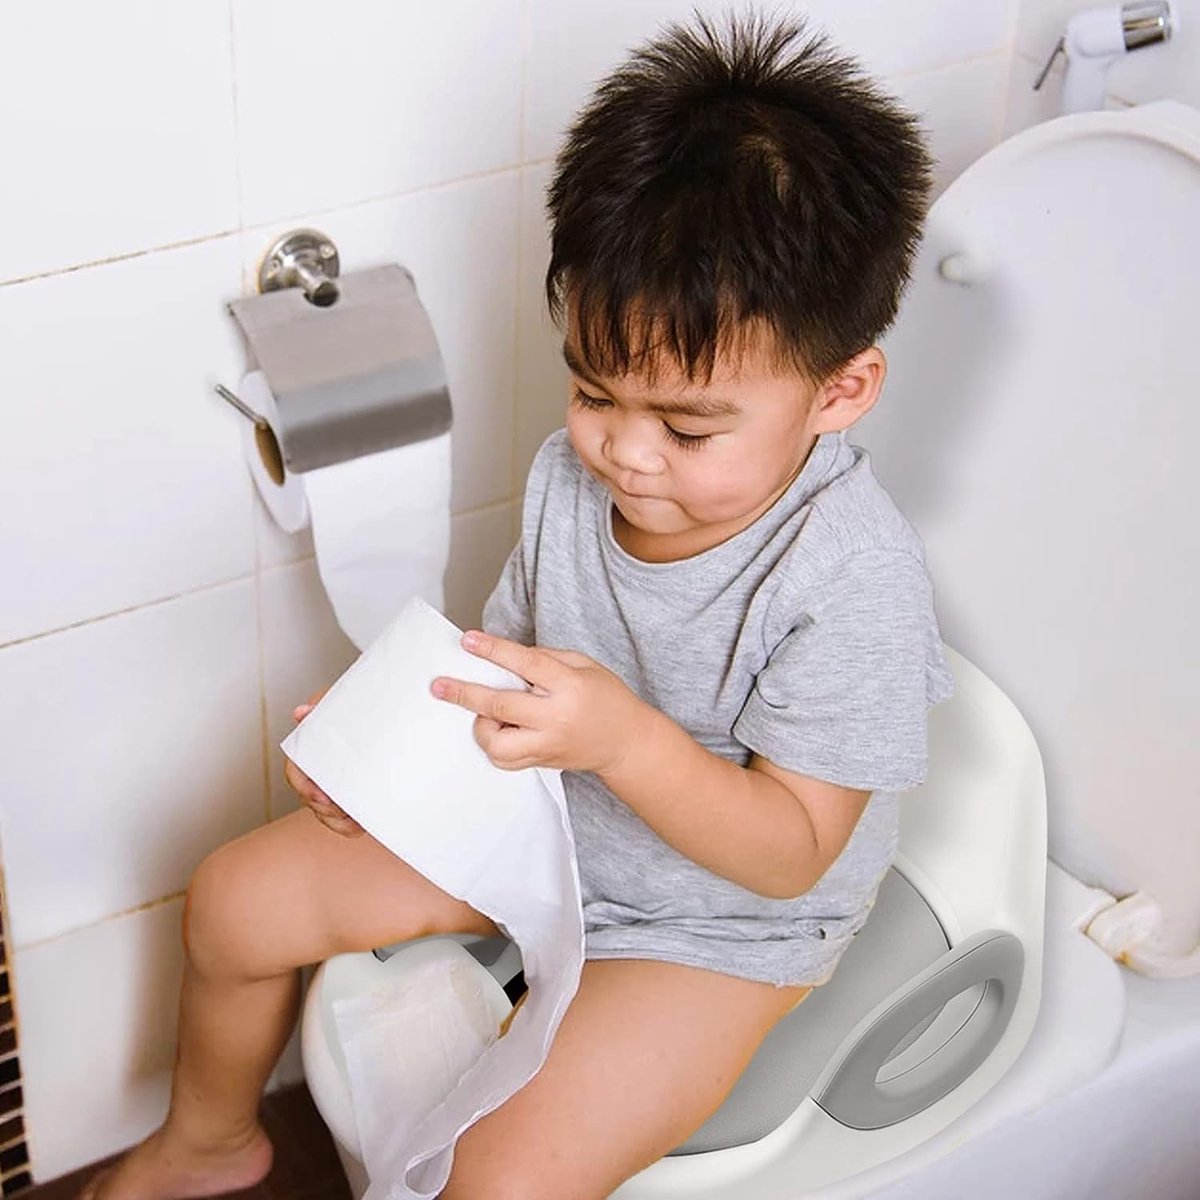 REDUCTEUR DE WC Siège de toilette pour enfant Pédale antidérapante Réglable  en hauteur Bleu clair + bleu